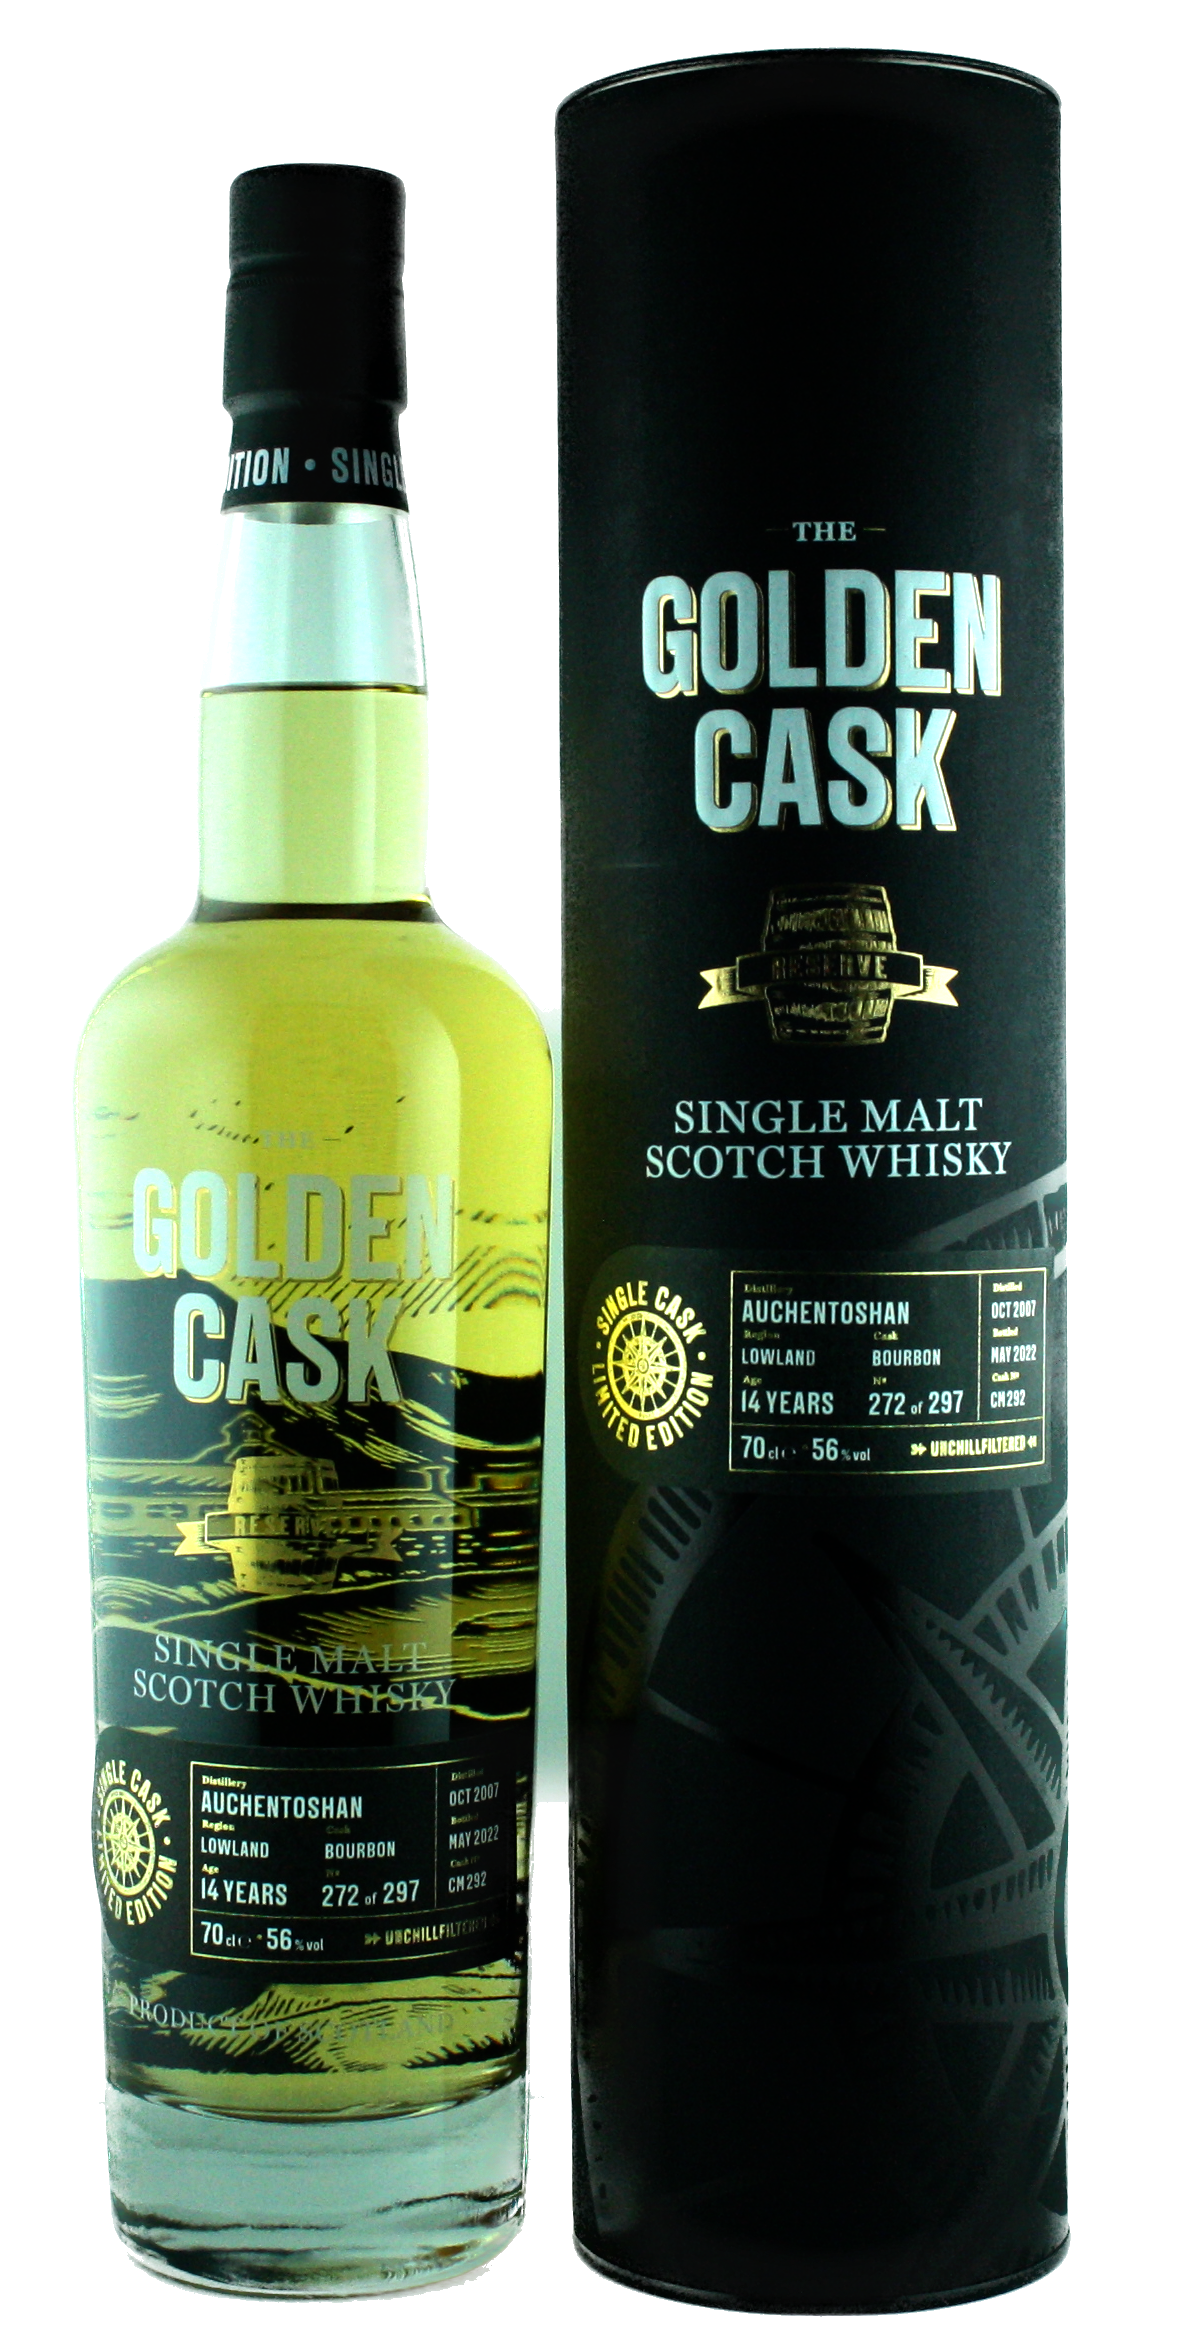 The Golden Cask Auchentoshan 14 Years